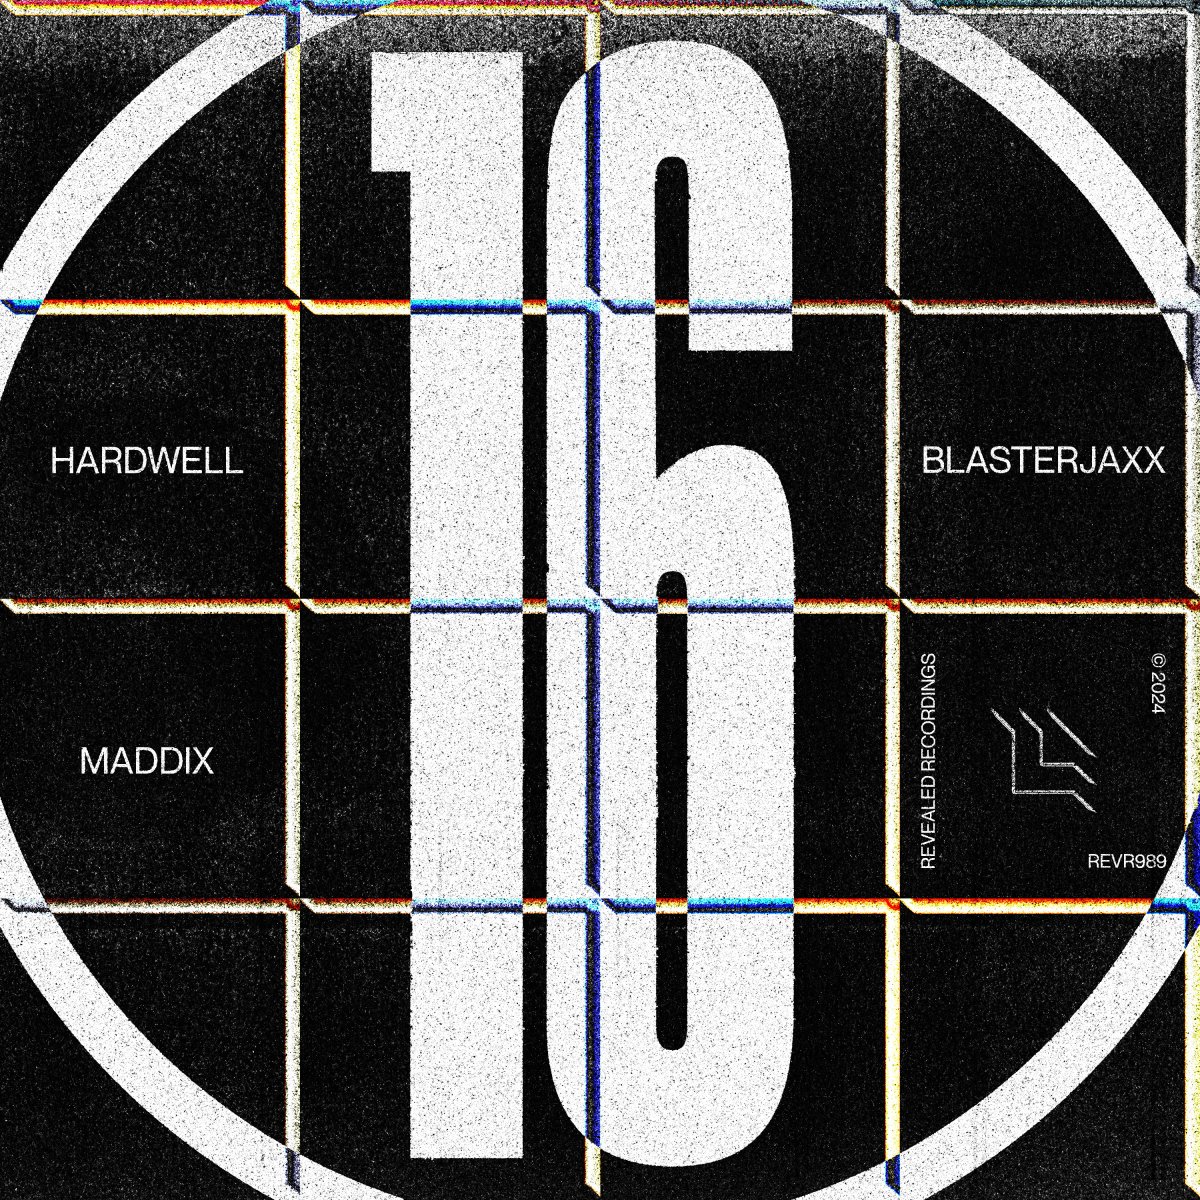 16 – Hardwell, Blasterjaxx & Maddix